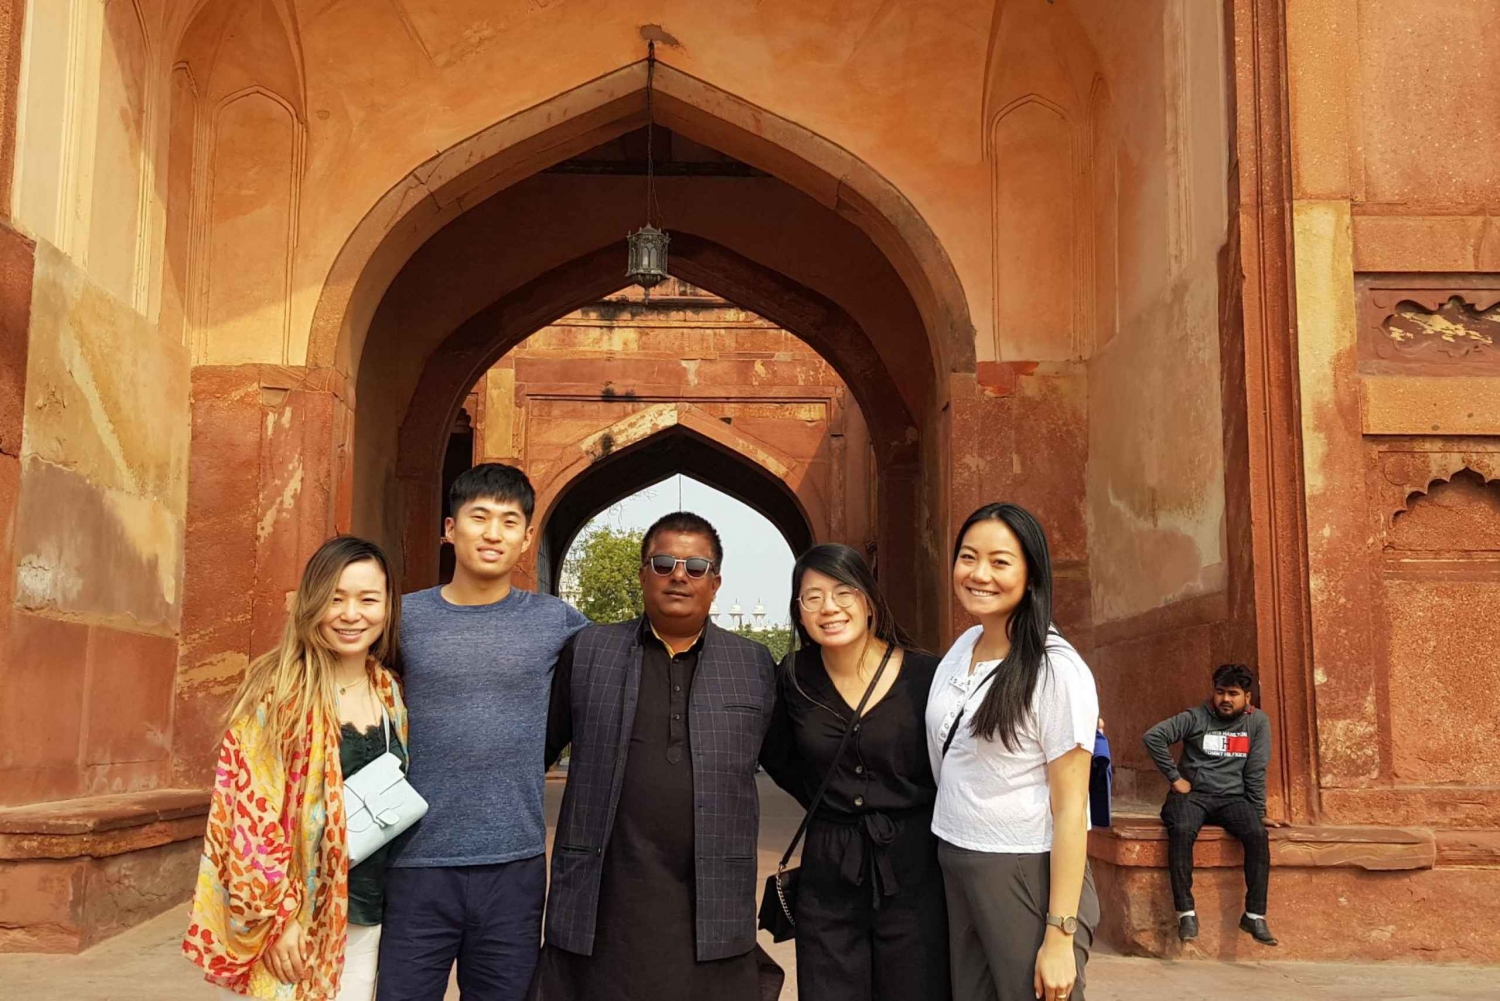 Jaipur: Excursión de 3 días al Triángulo de Oro de Agra y Delhi